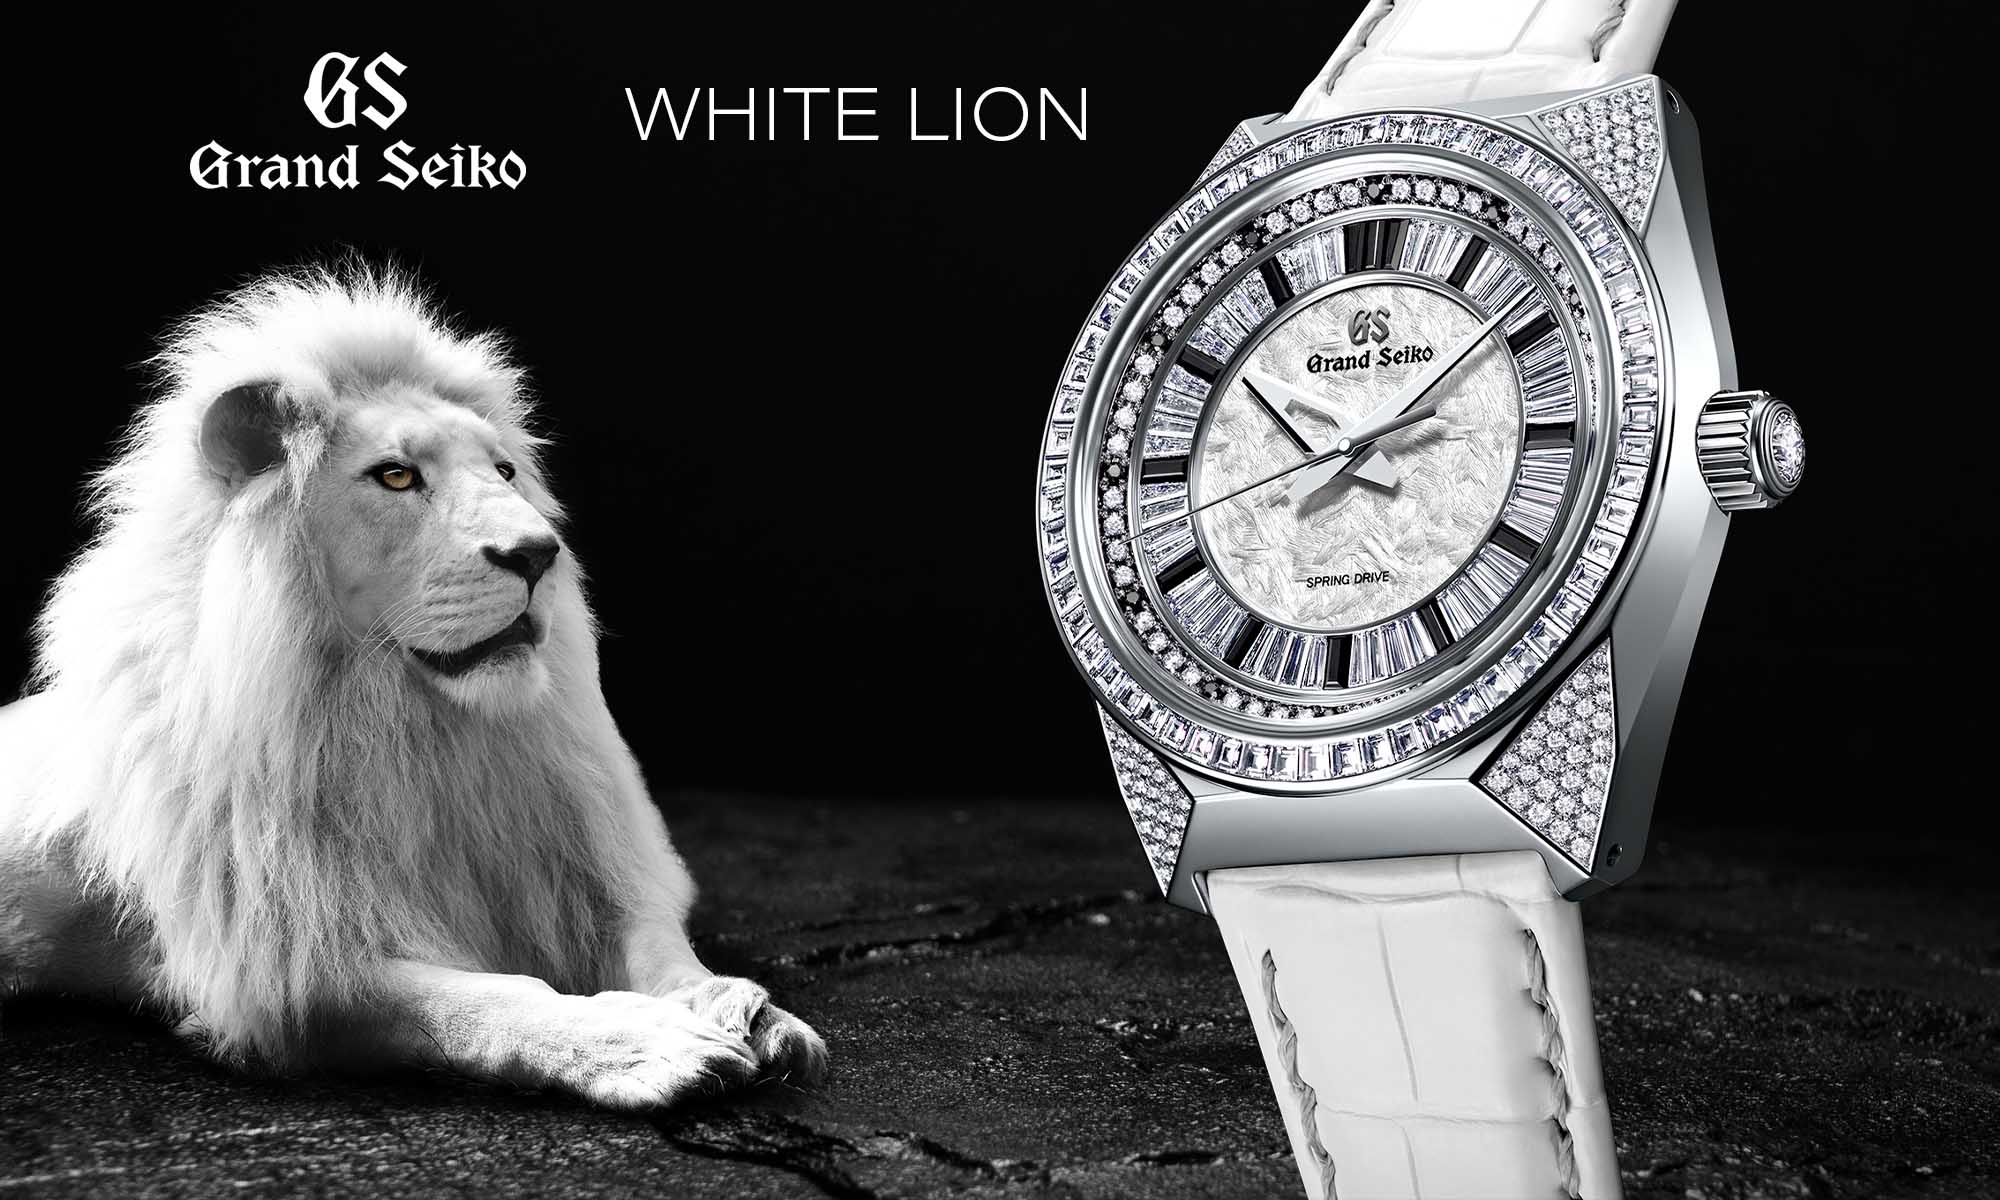 Grand Seiko SBGD209 White Lion